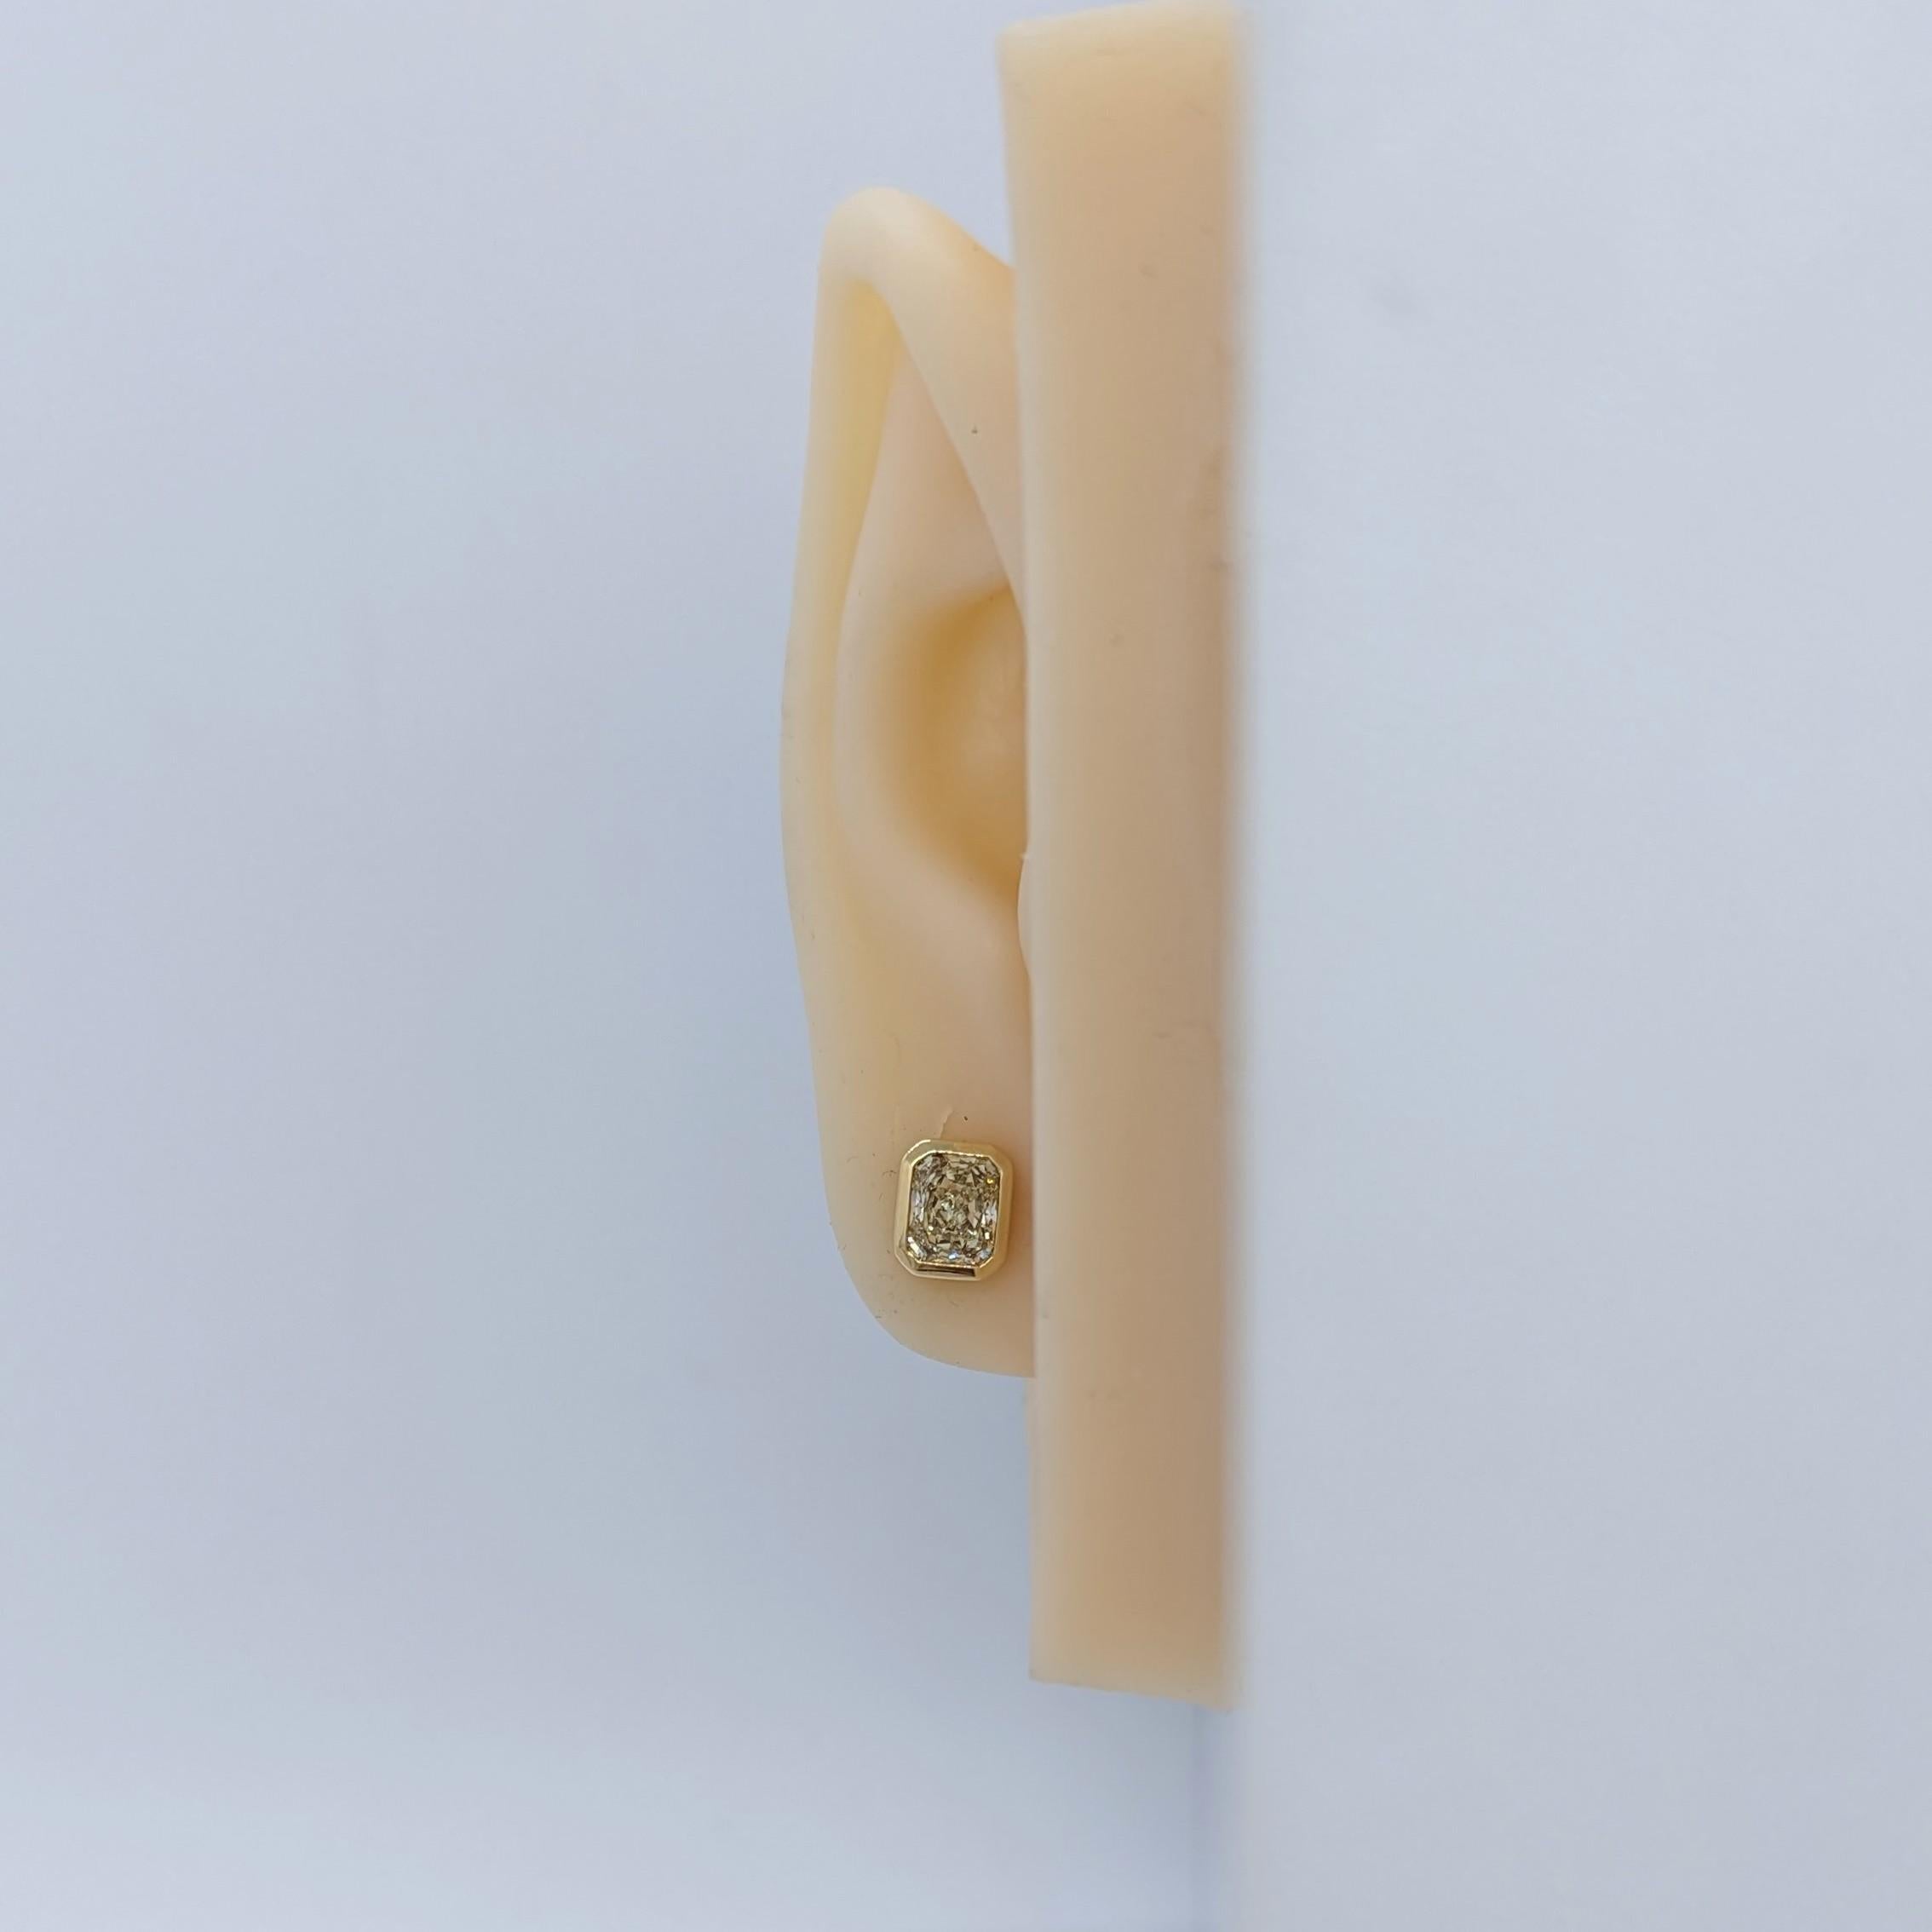 Schöne 2,43 ct. UV und SX Farbe VVS-VS Reinheit Diamant Radianten.  Handgefertigte Beschläge aus 18k Gelbgold.  Für gepiercte Ohren mit Push-Back-Fassung.  GIA-Zertifikate inbegriffen.